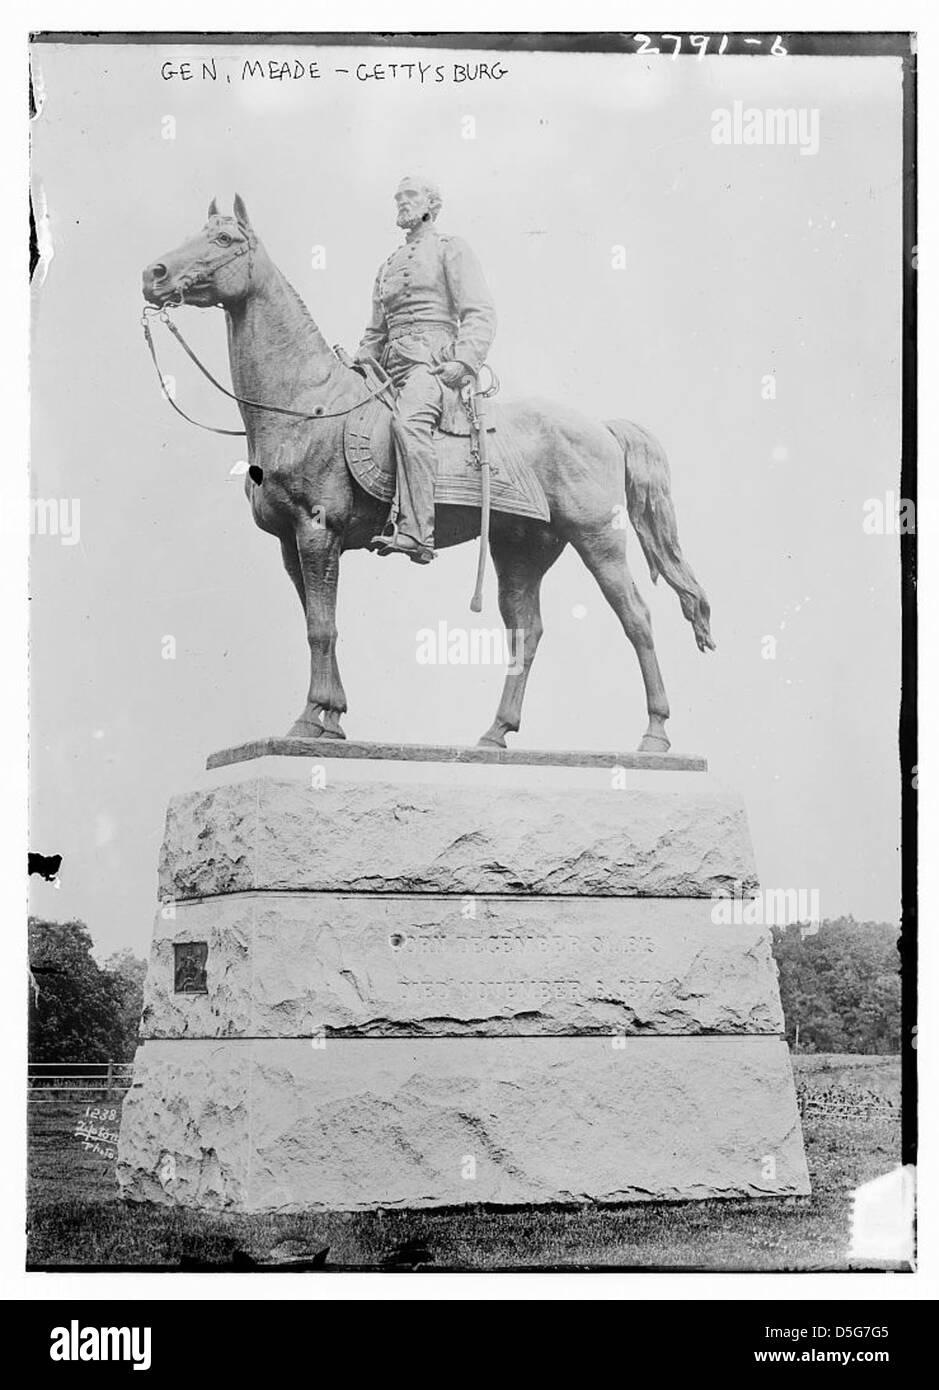 Gen. Meade - Gettysburg (LOC) Stock Photo